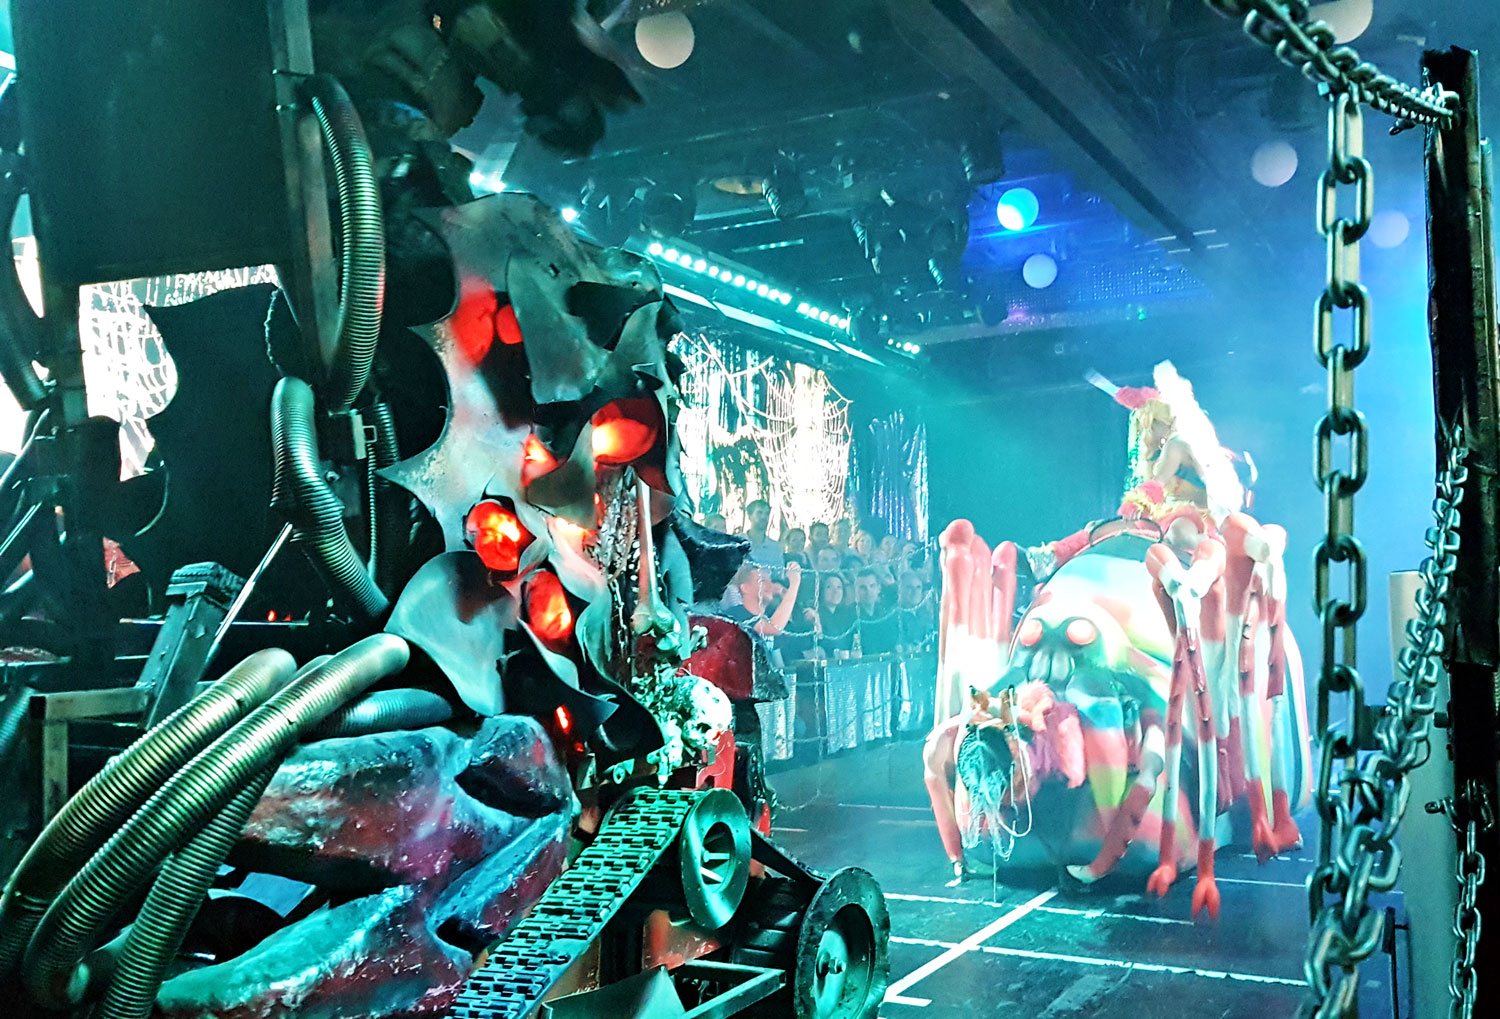 Crazy robot performance at Robot Restaurant in Shinjuku, Tokyo, Japan